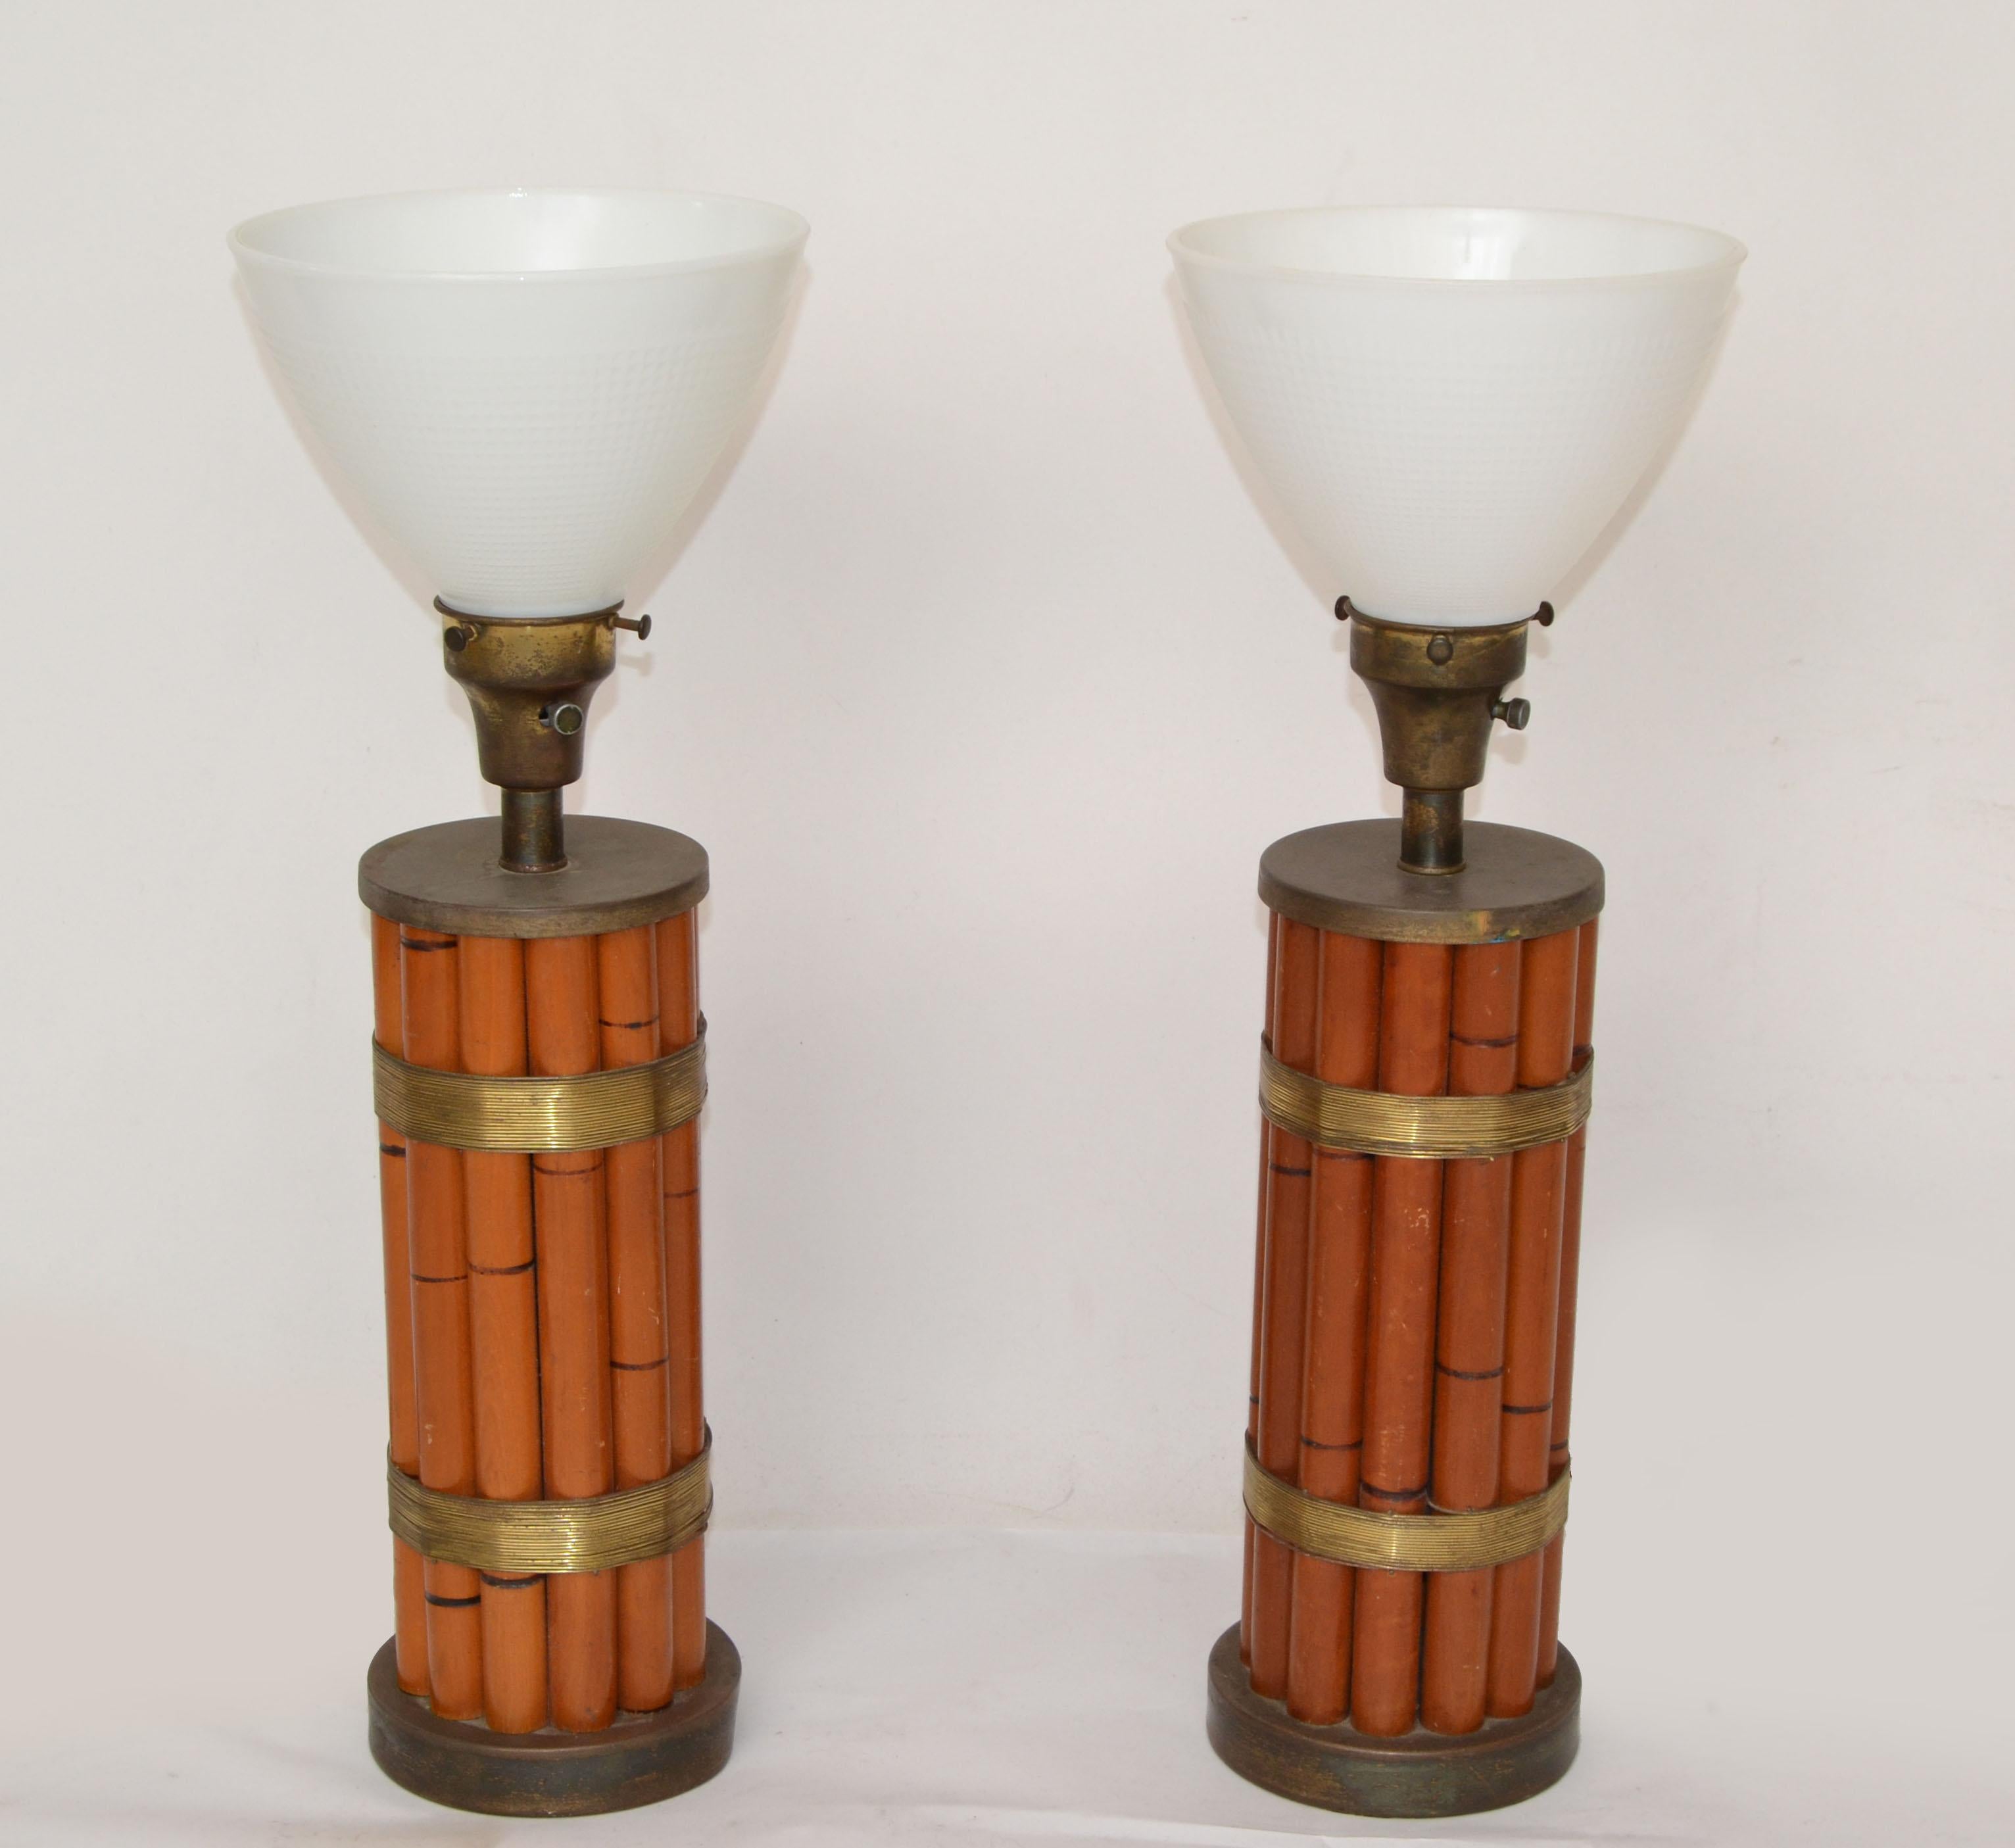 1950 Russel Wright Chapman Manufacturing Company style artisanal Mid-Century Modern paire de lampes de table en bambou et détails en laiton avec globes en verre de lait.
Les deux sont câblés pour les États-Unis et fonctionnent avec une ampoule